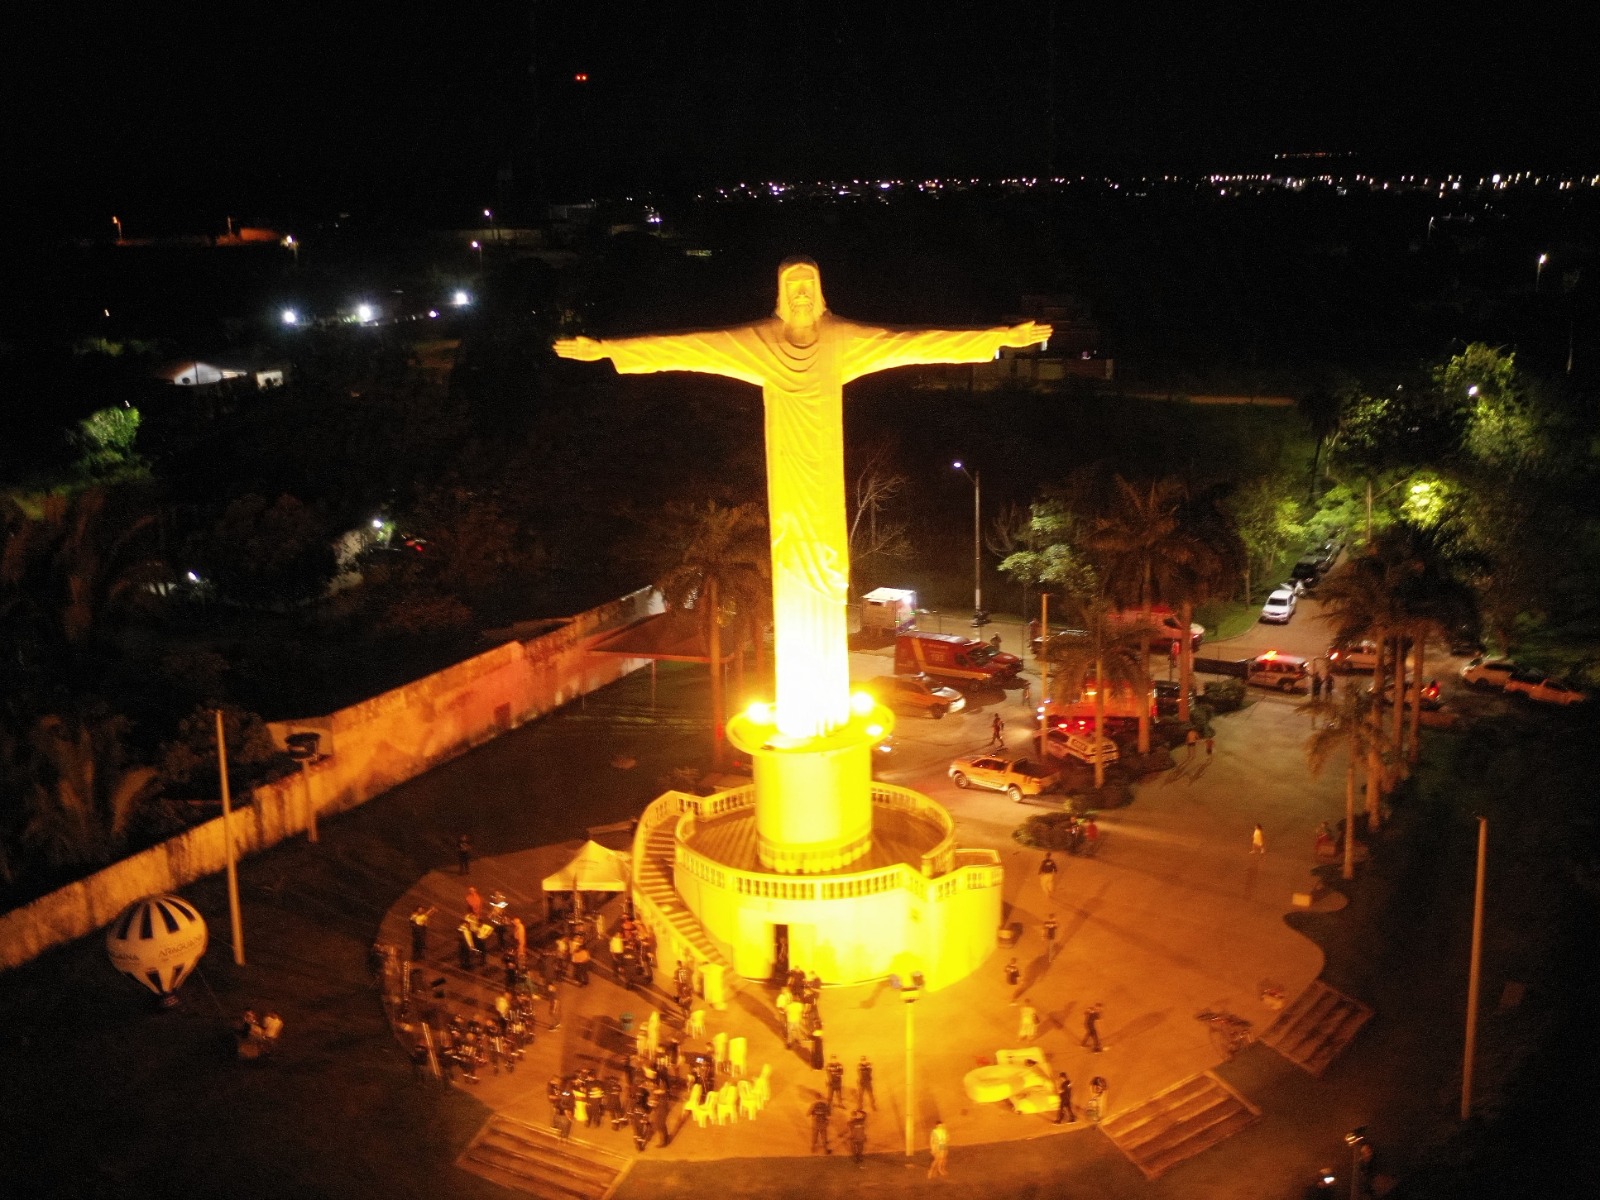 A campanha foi oficialmente lançada pela Prefeitura de Araguaína e parceiros na última sexta-feira, 5, no monumento do Cristo Redentor, que recebe durante todo o mês uma iluminação especial amarela (Foto: Marcos Sandes/Secom Araguaína)